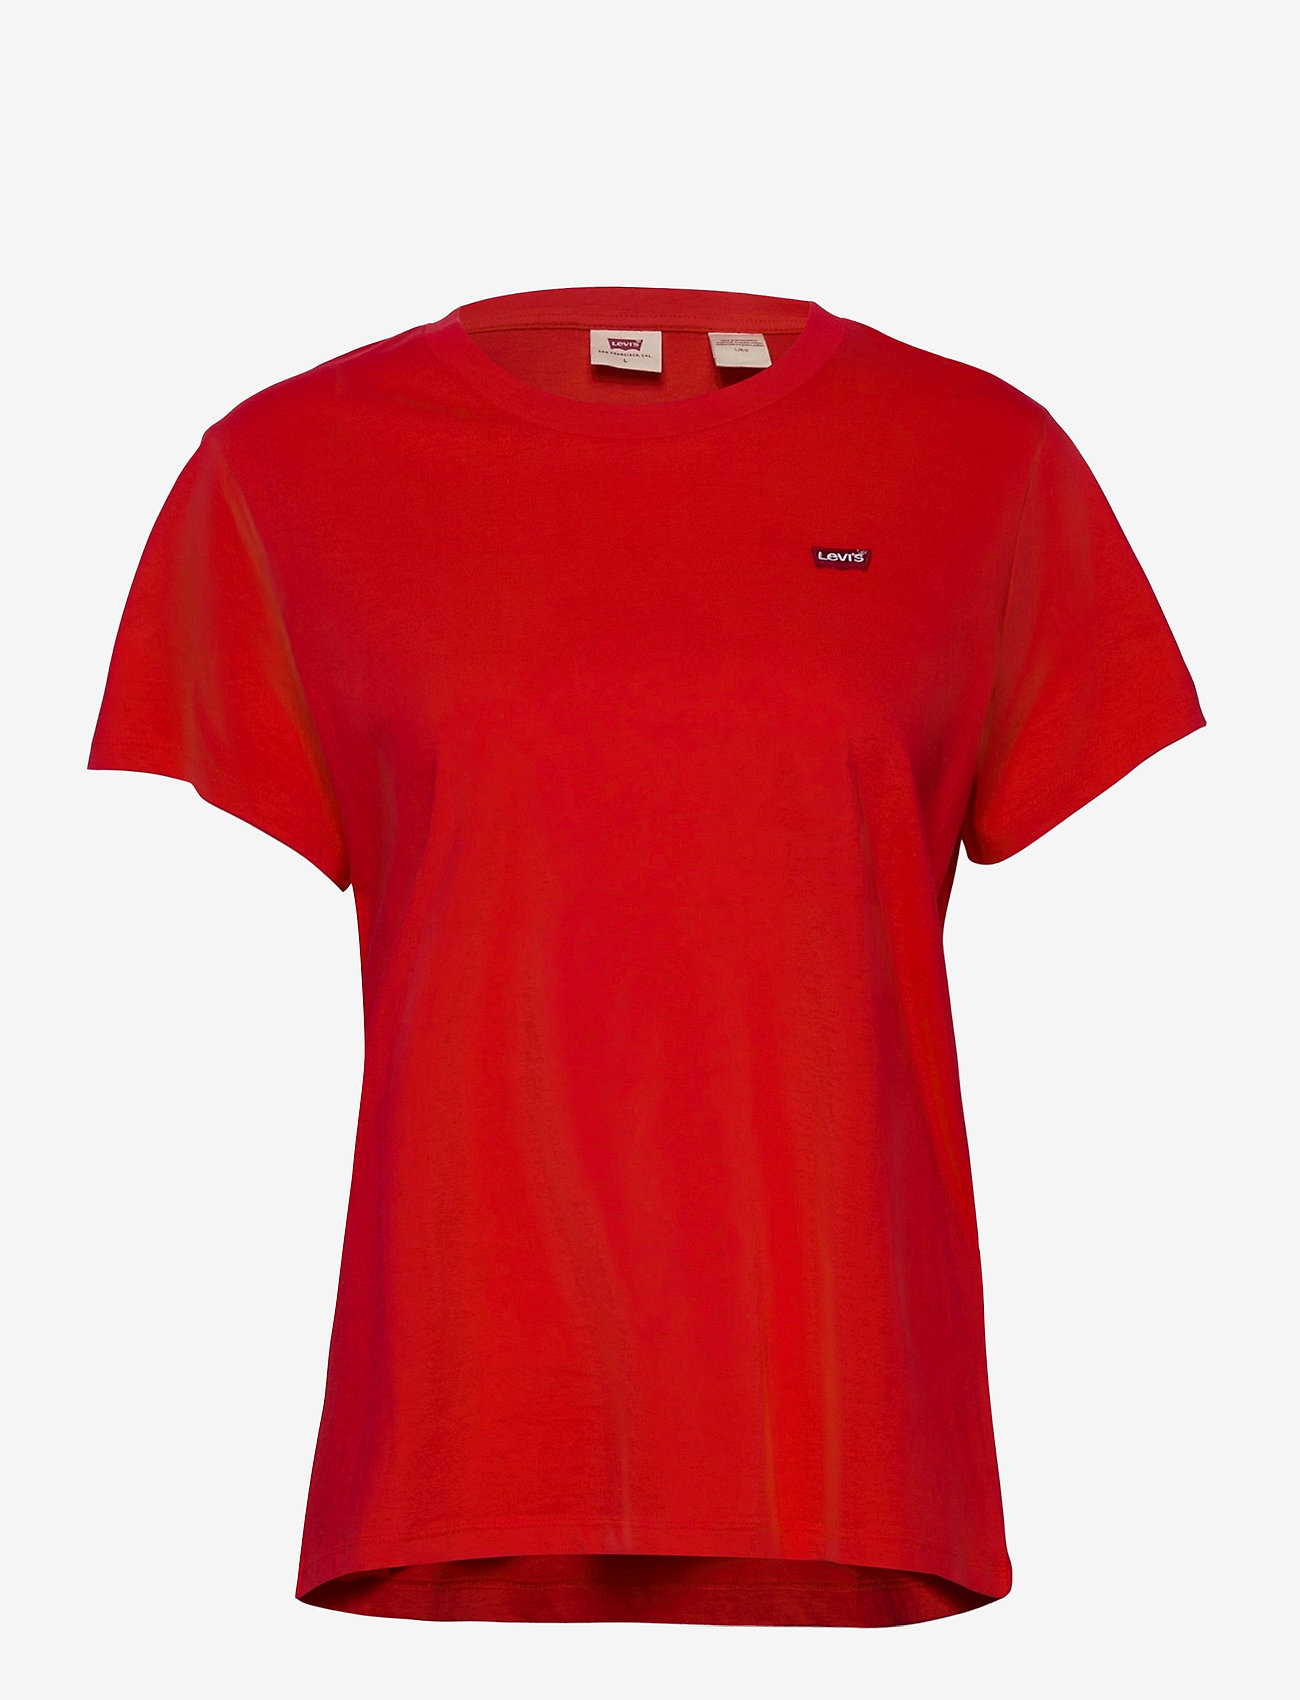 reds shirts cheap